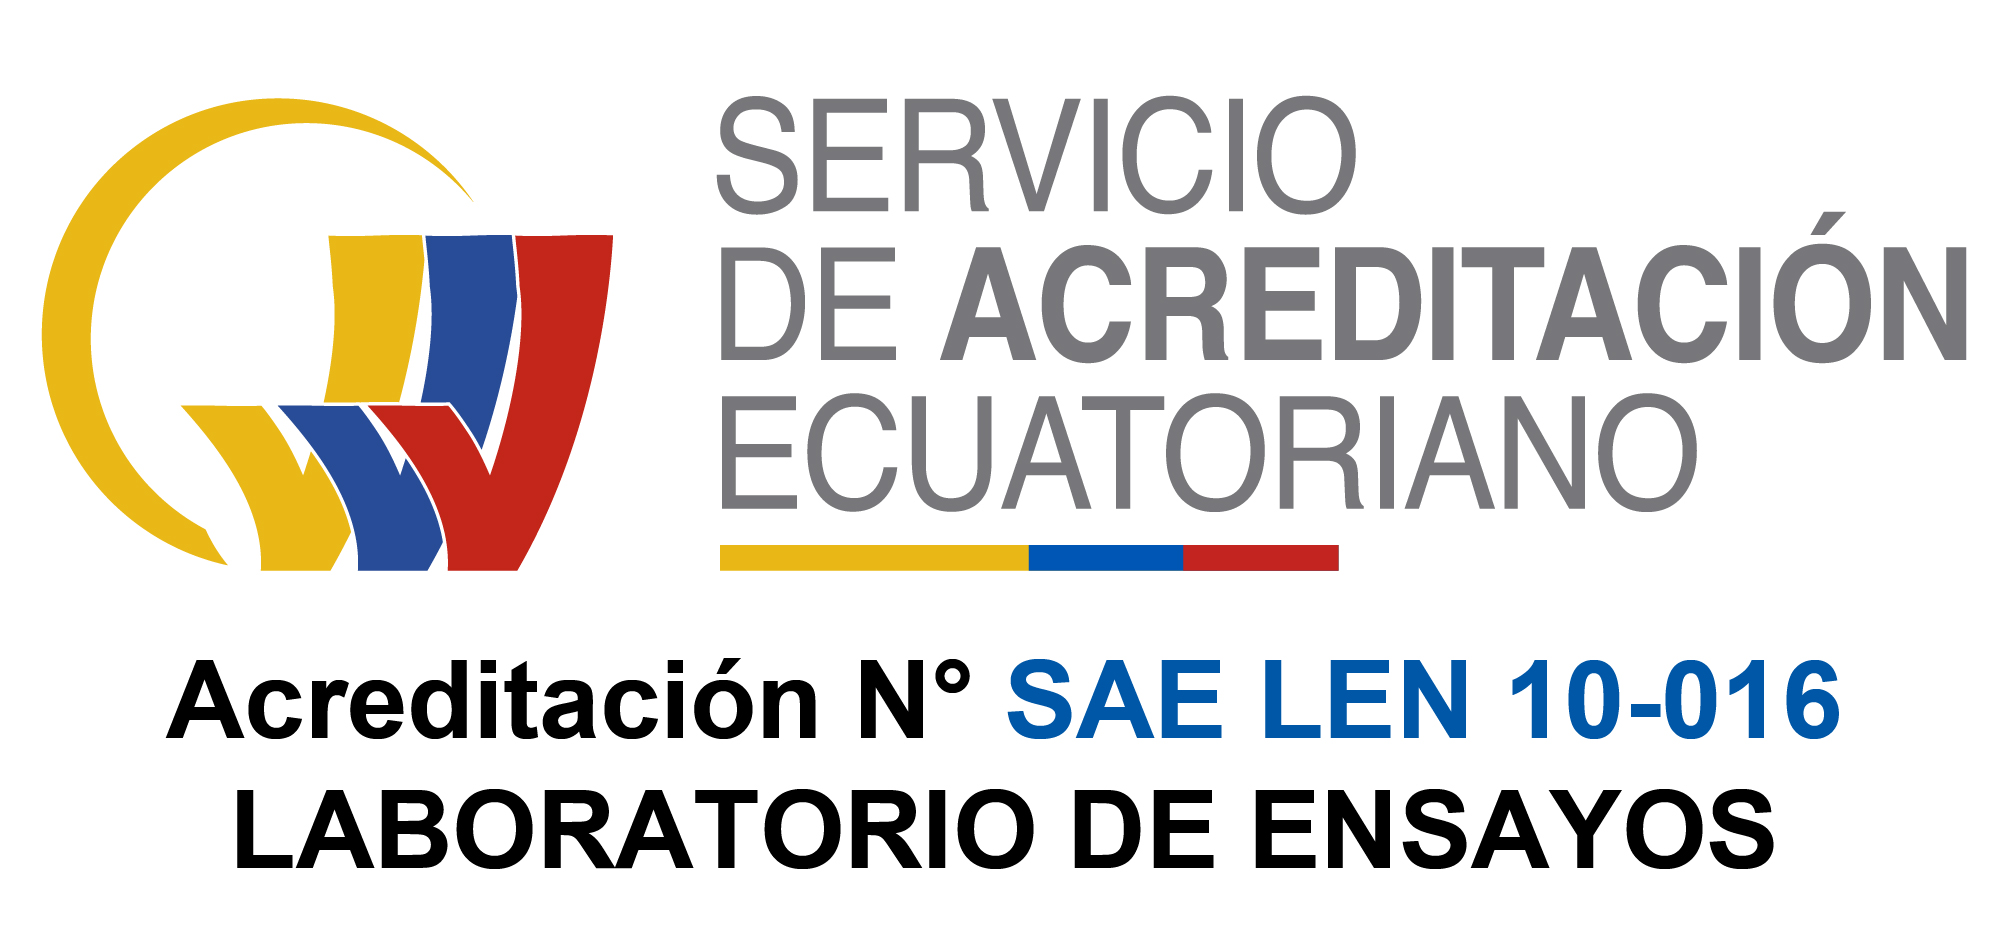 Servicio-de-Acreditacion-de-Ecuador-Laboratorios-de-Ensayos